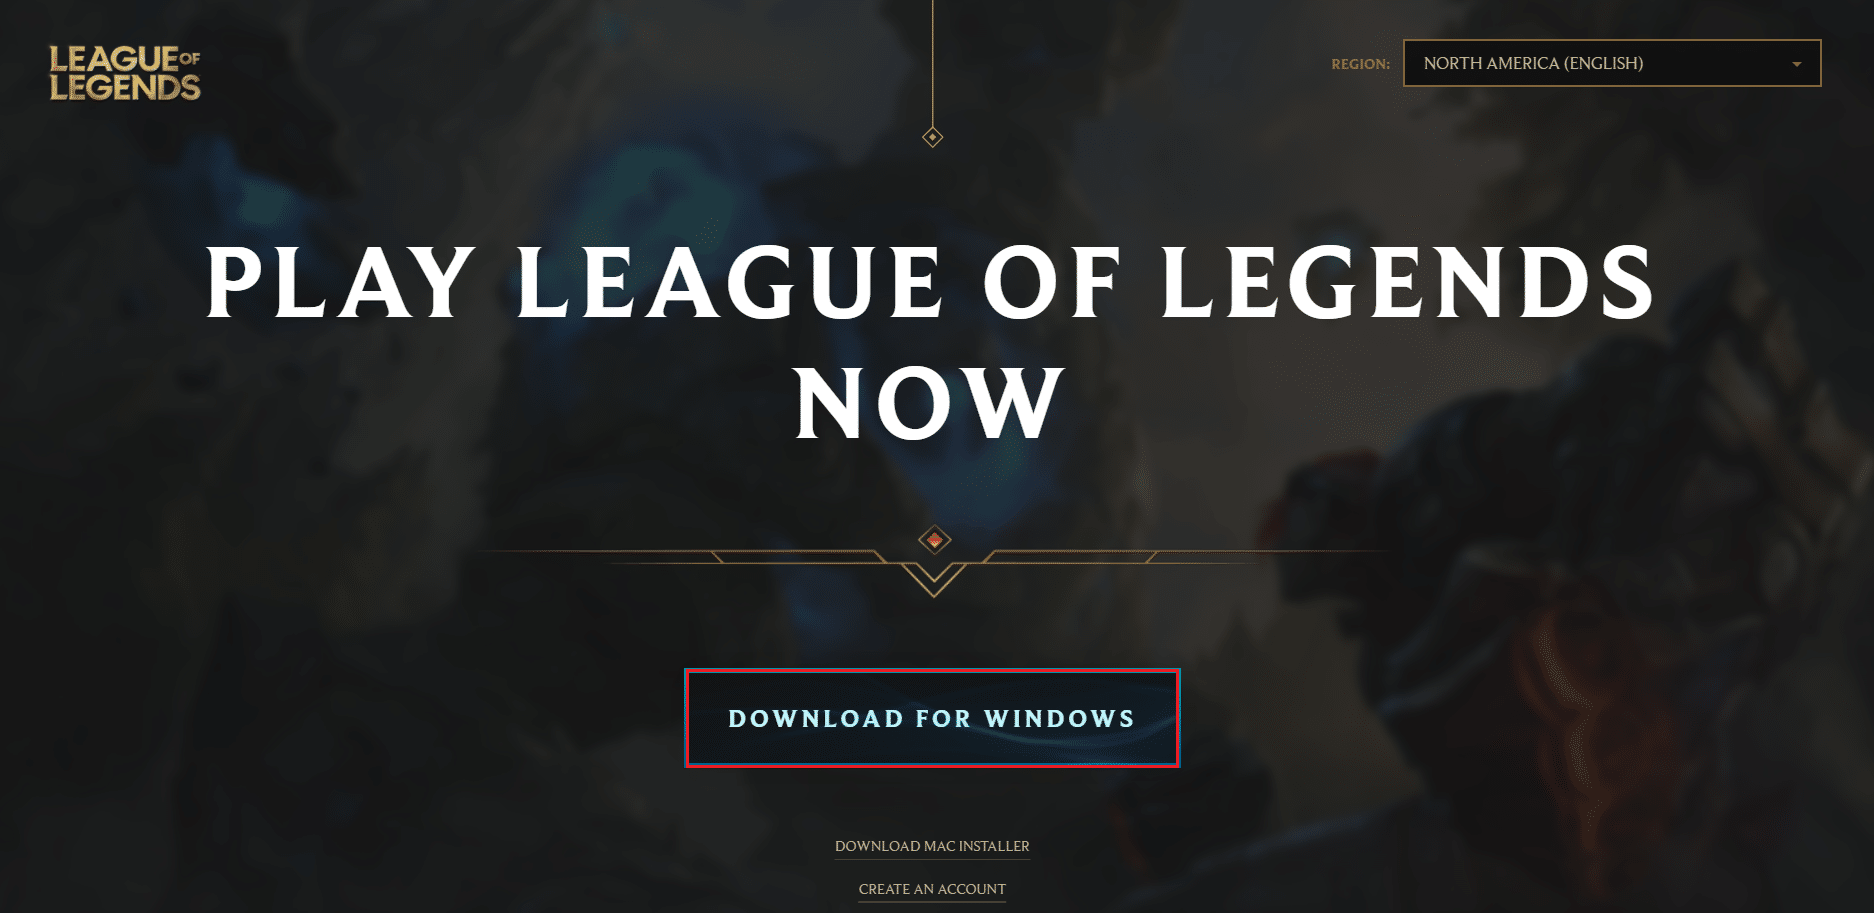 след като се регистрирате, щракнете върху изтегляне за Windows на страницата за изтегляне на League of Legends